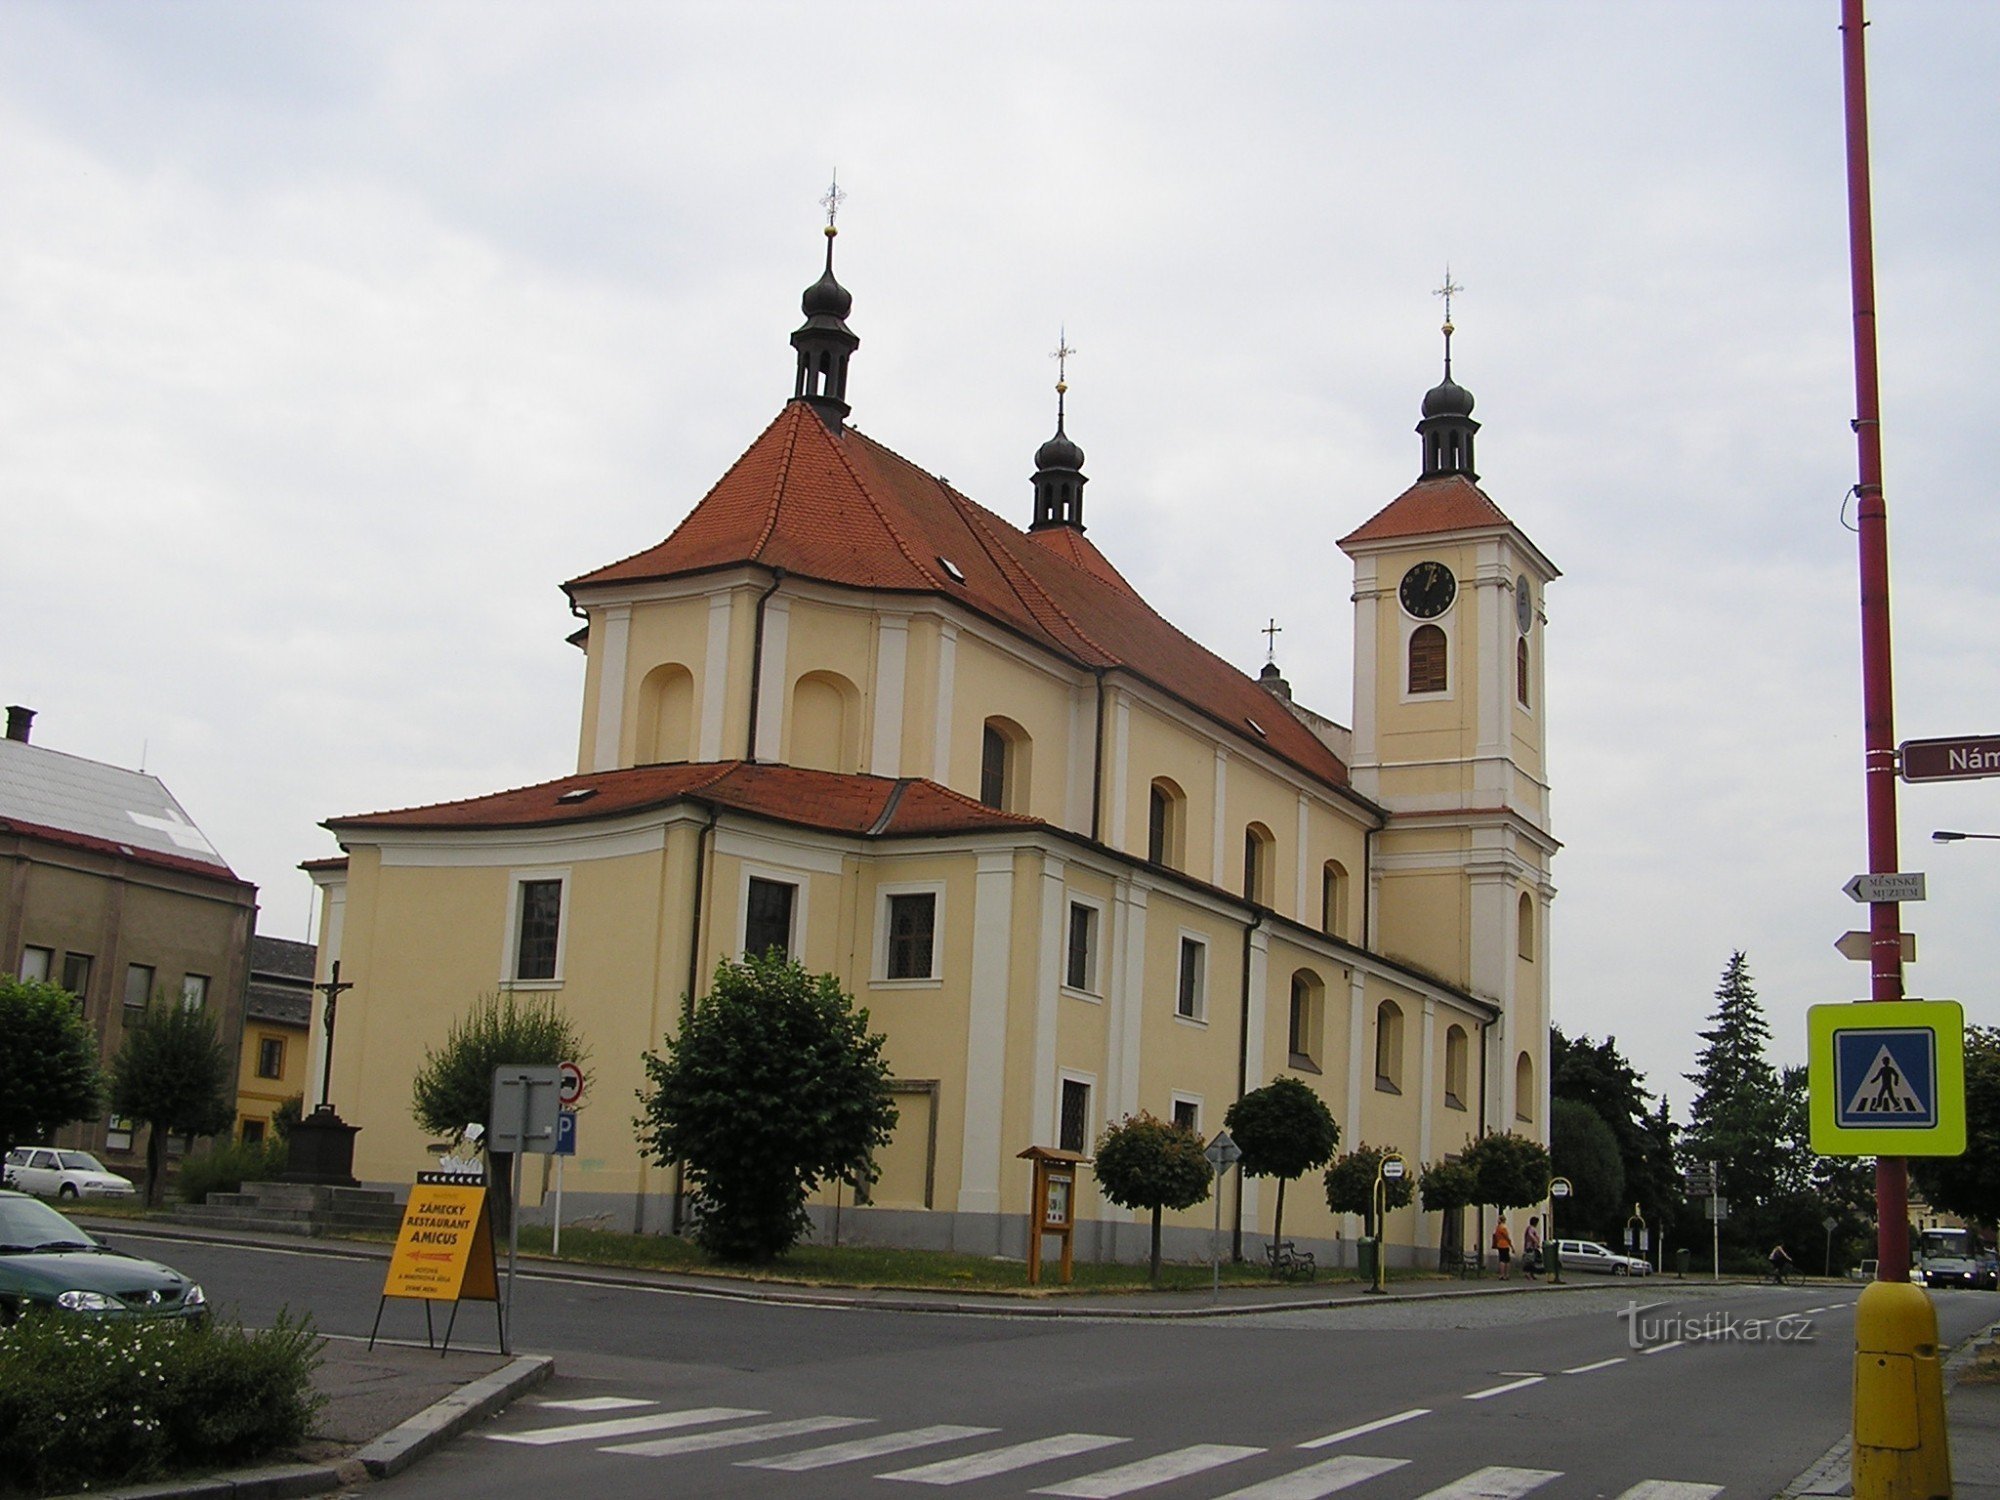 Kościół Świętej Trójcy